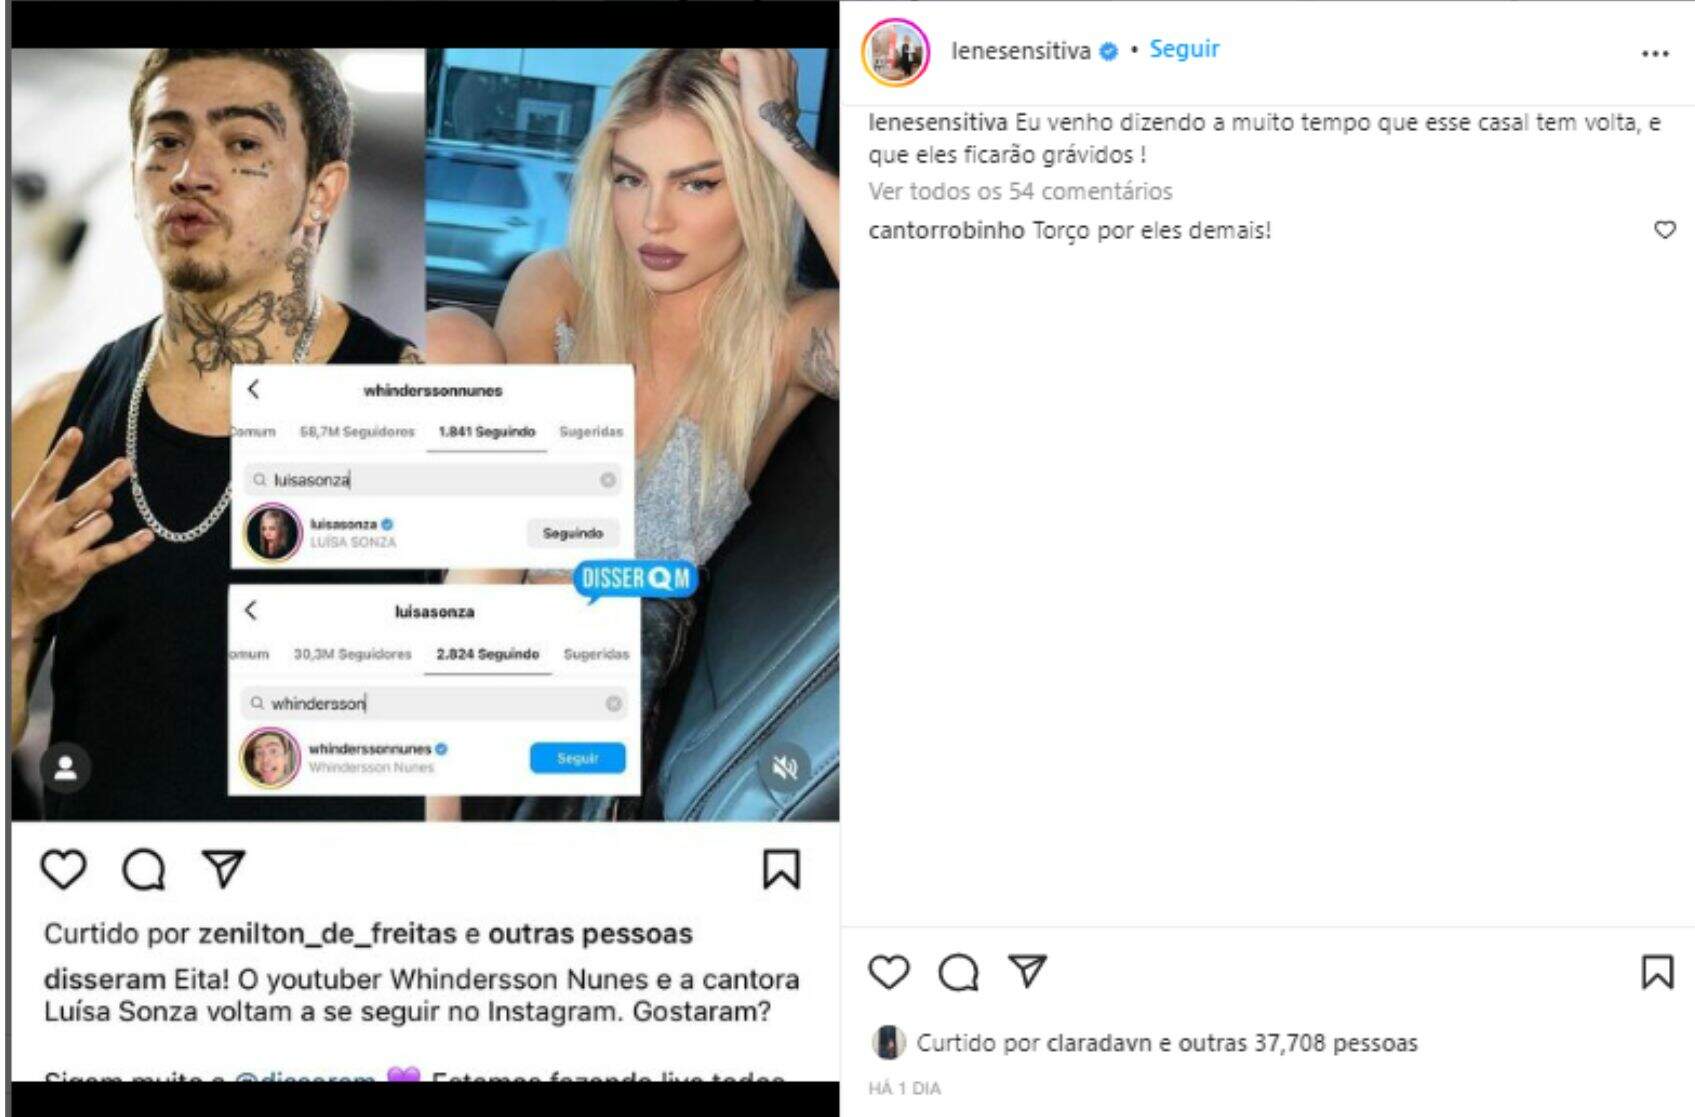 Lene Sensitiva deu mais esperanças para os fãs do casal Luísa Sonza e Whindersson Nunes